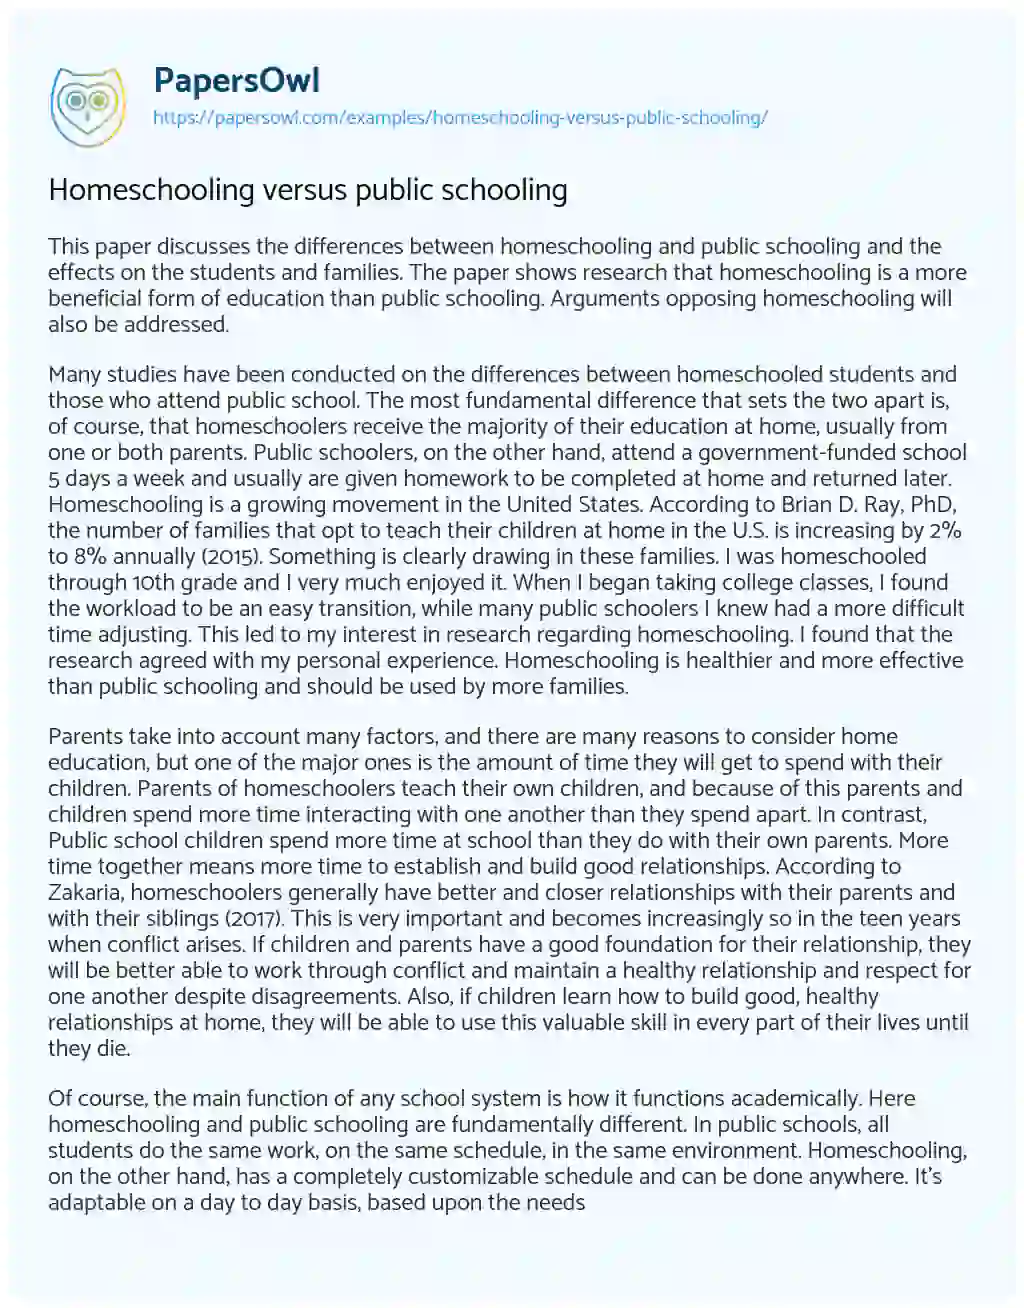 Essay on Homeschooling Versus Public Schooling